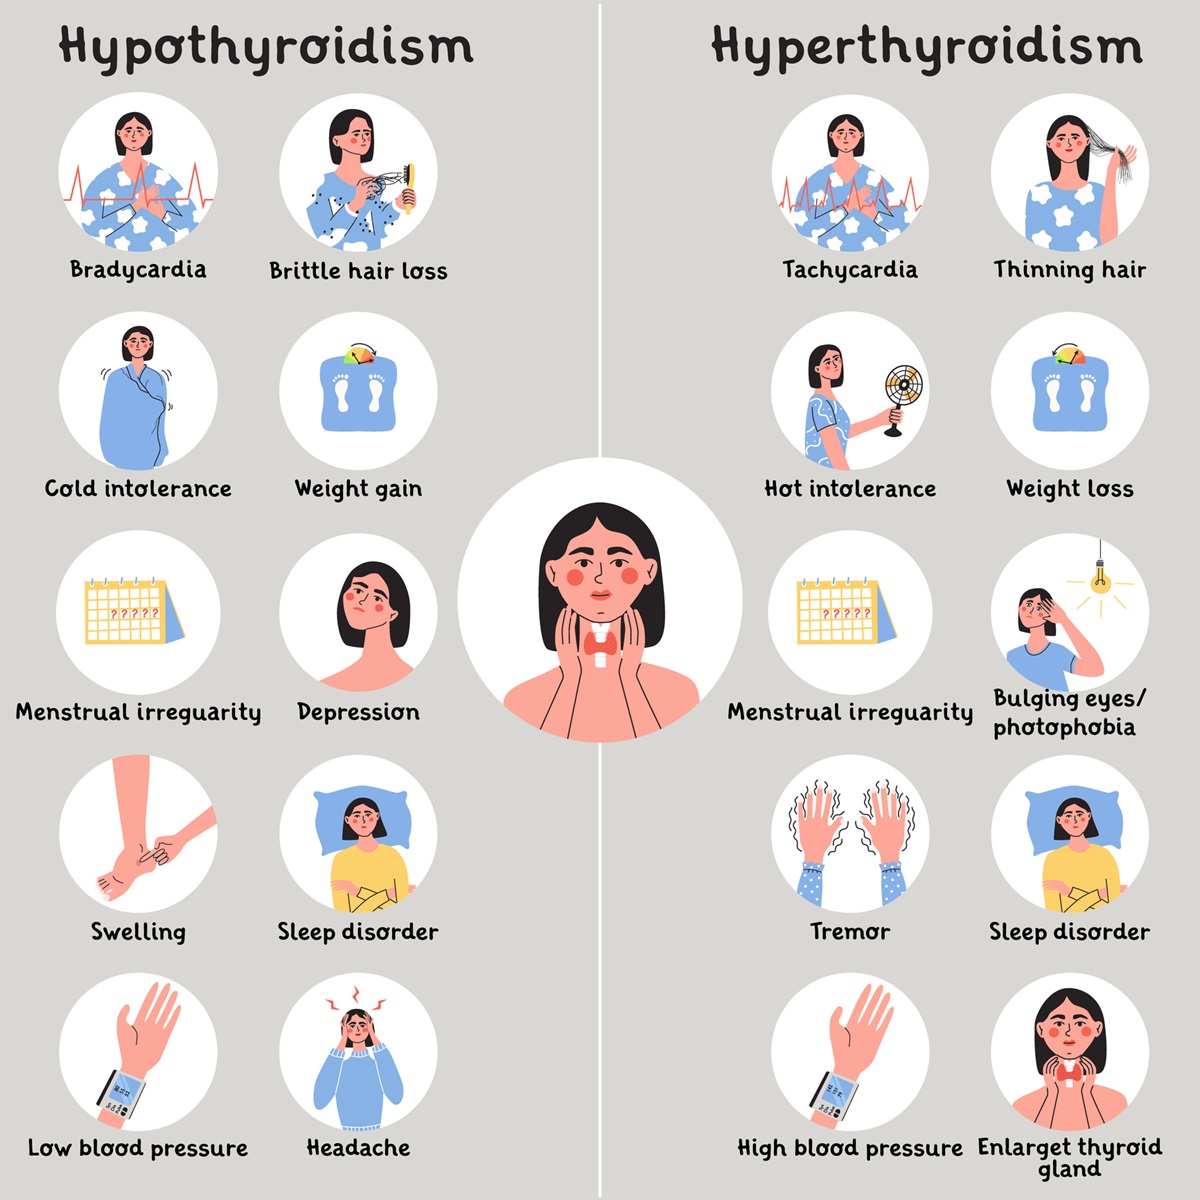 Spoločné znaky a rozdiely Hypotyréozy a Hypertyreózy.